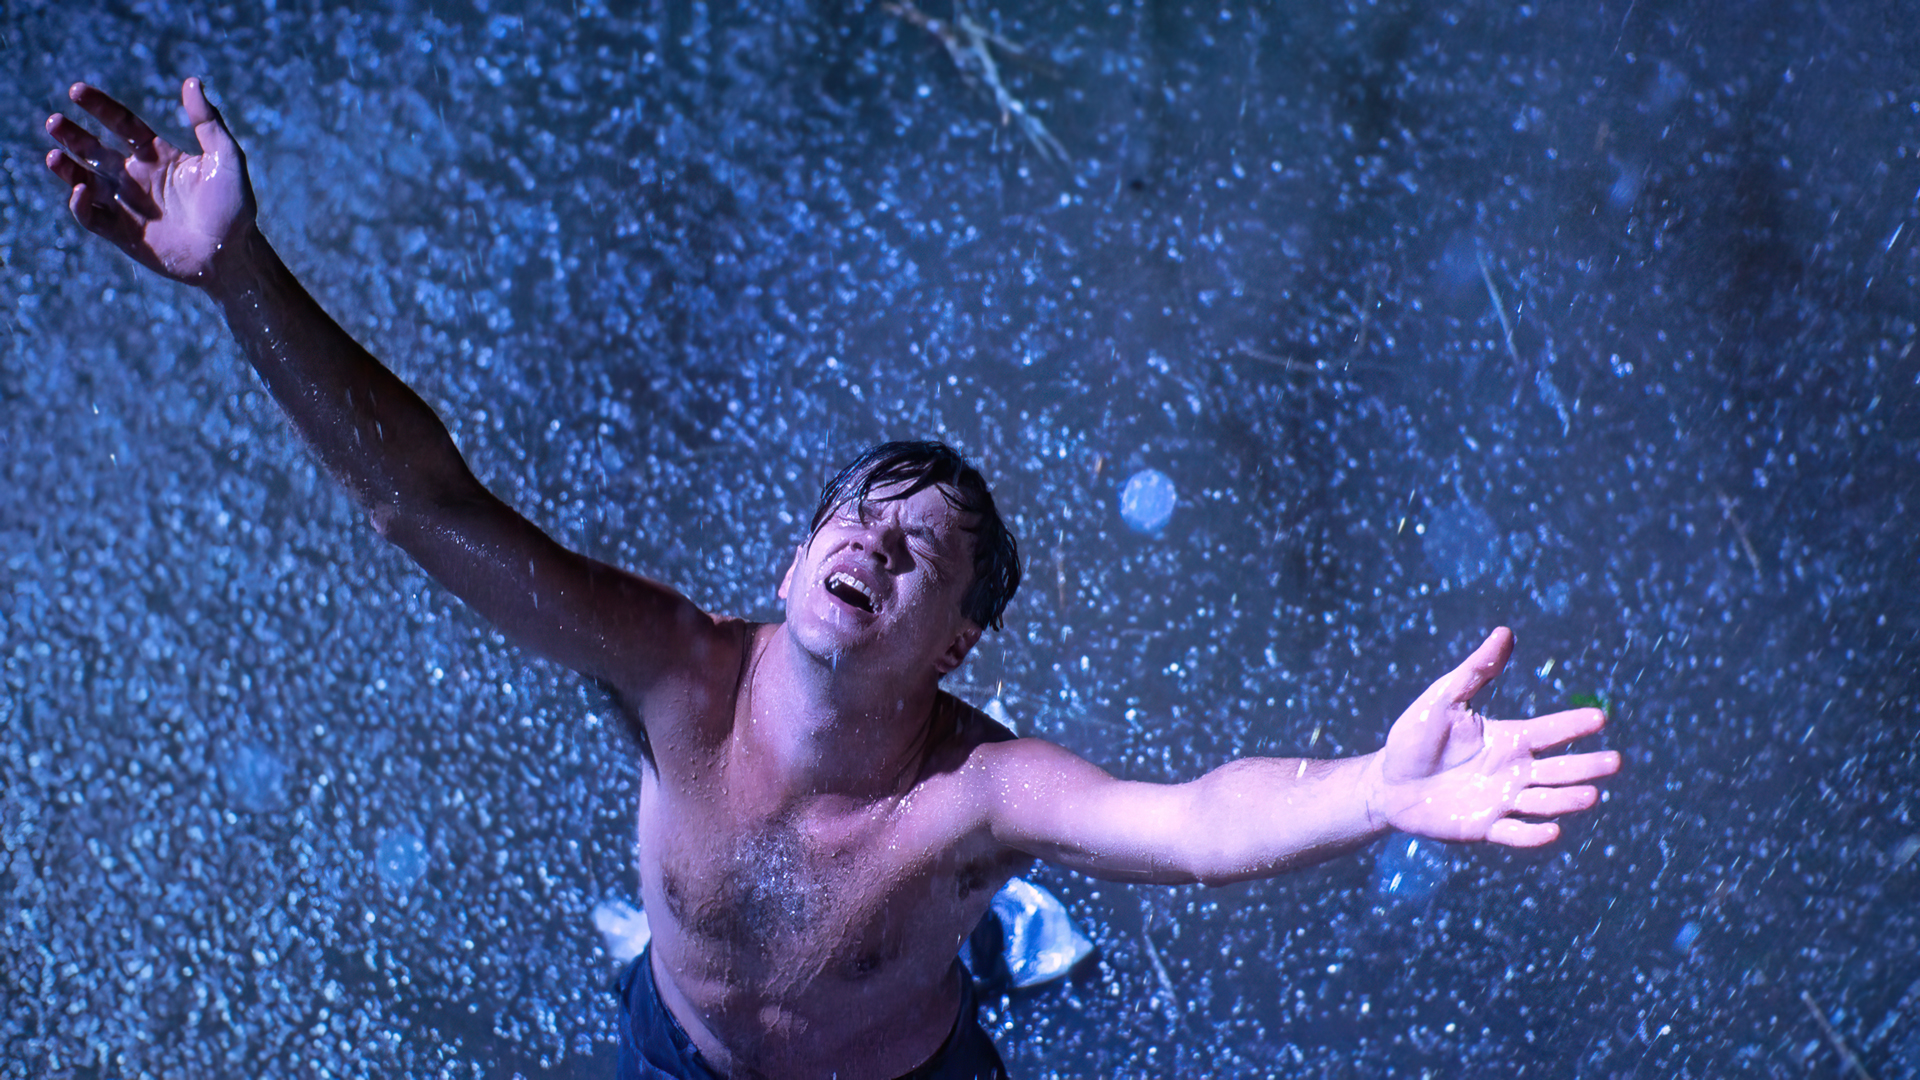 The Shawshank Redemption Movies Film Stills Andy Dufresne Tim Robbins Actor Rain Stephen King 1920x1080